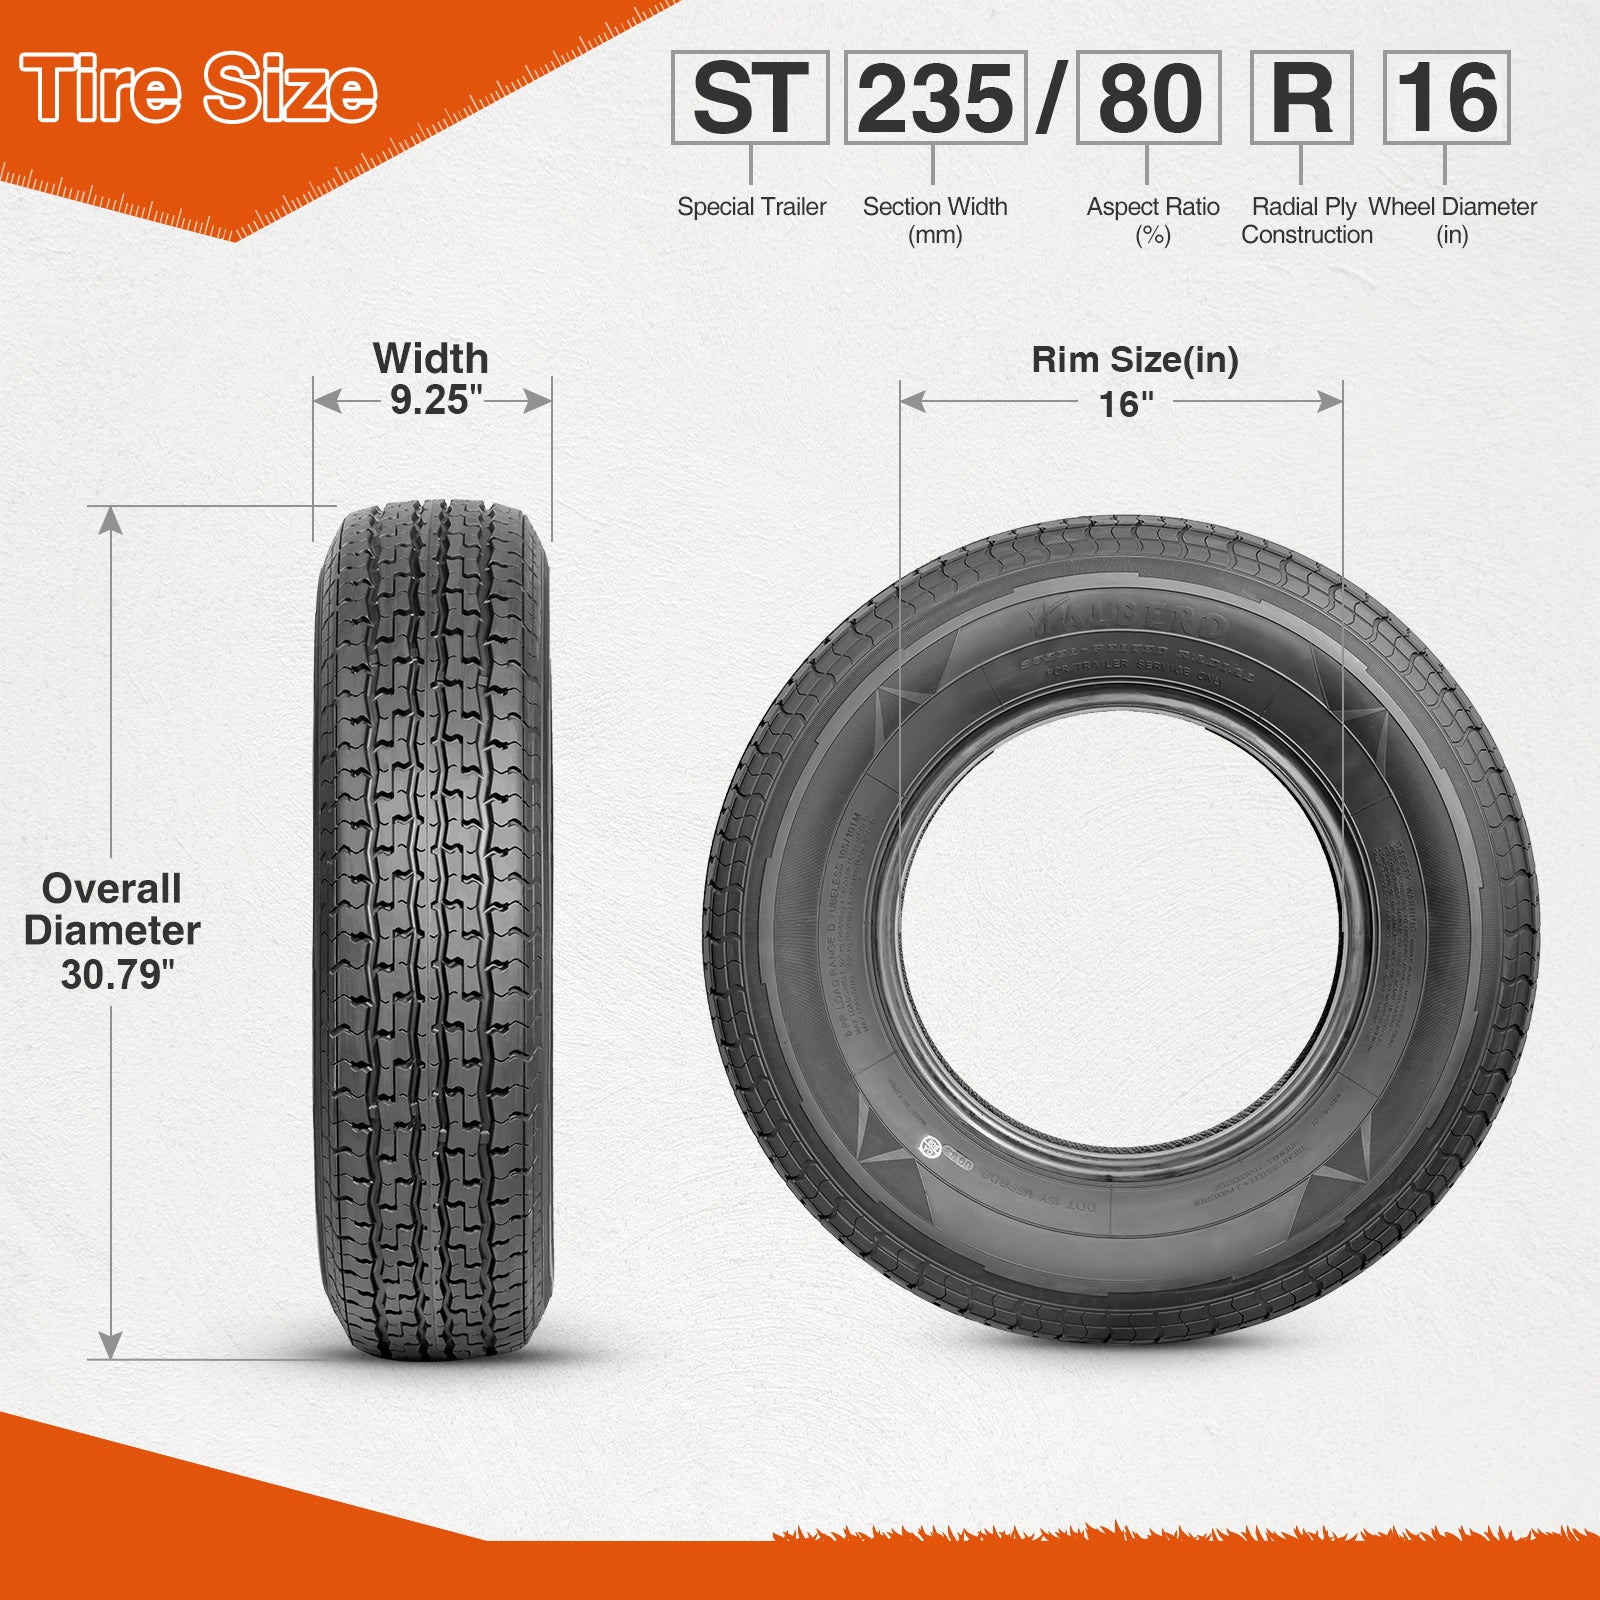 Halberd WR076 ST235/80R16 Trailer Tires